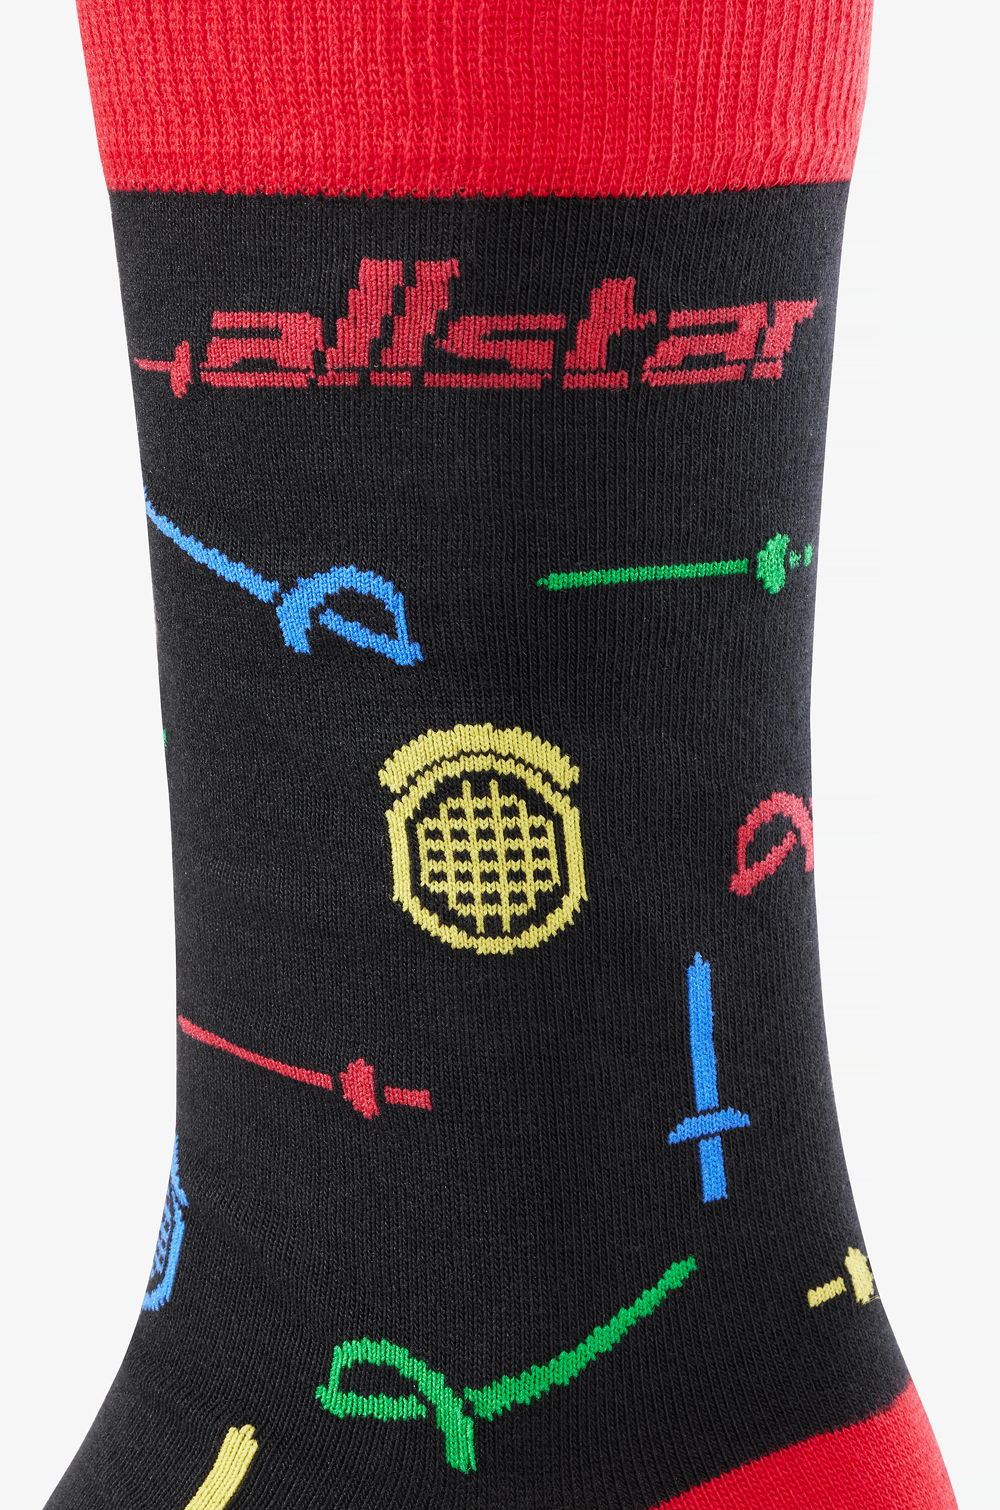 allstar Socks (limited edition)